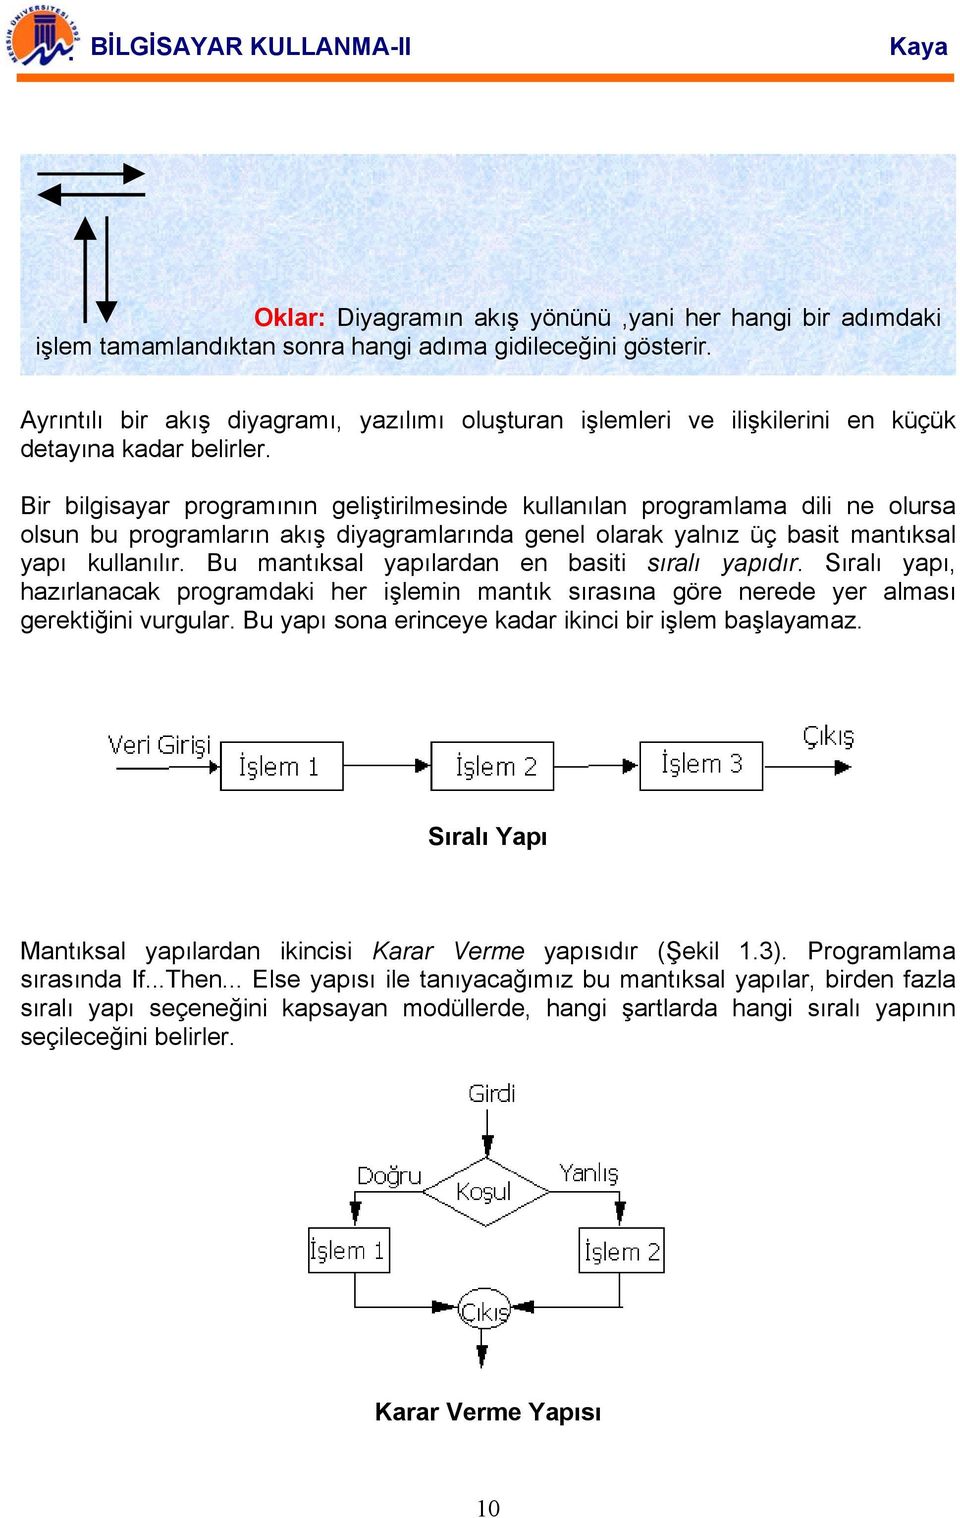 Bir bilgisayar programının geliştirilmesinde kullanılan programlama dili ne olursa olsun bu programların akış diyagramlarında genel olarak yalnız üç basit mantıksal yapı kullanılır.